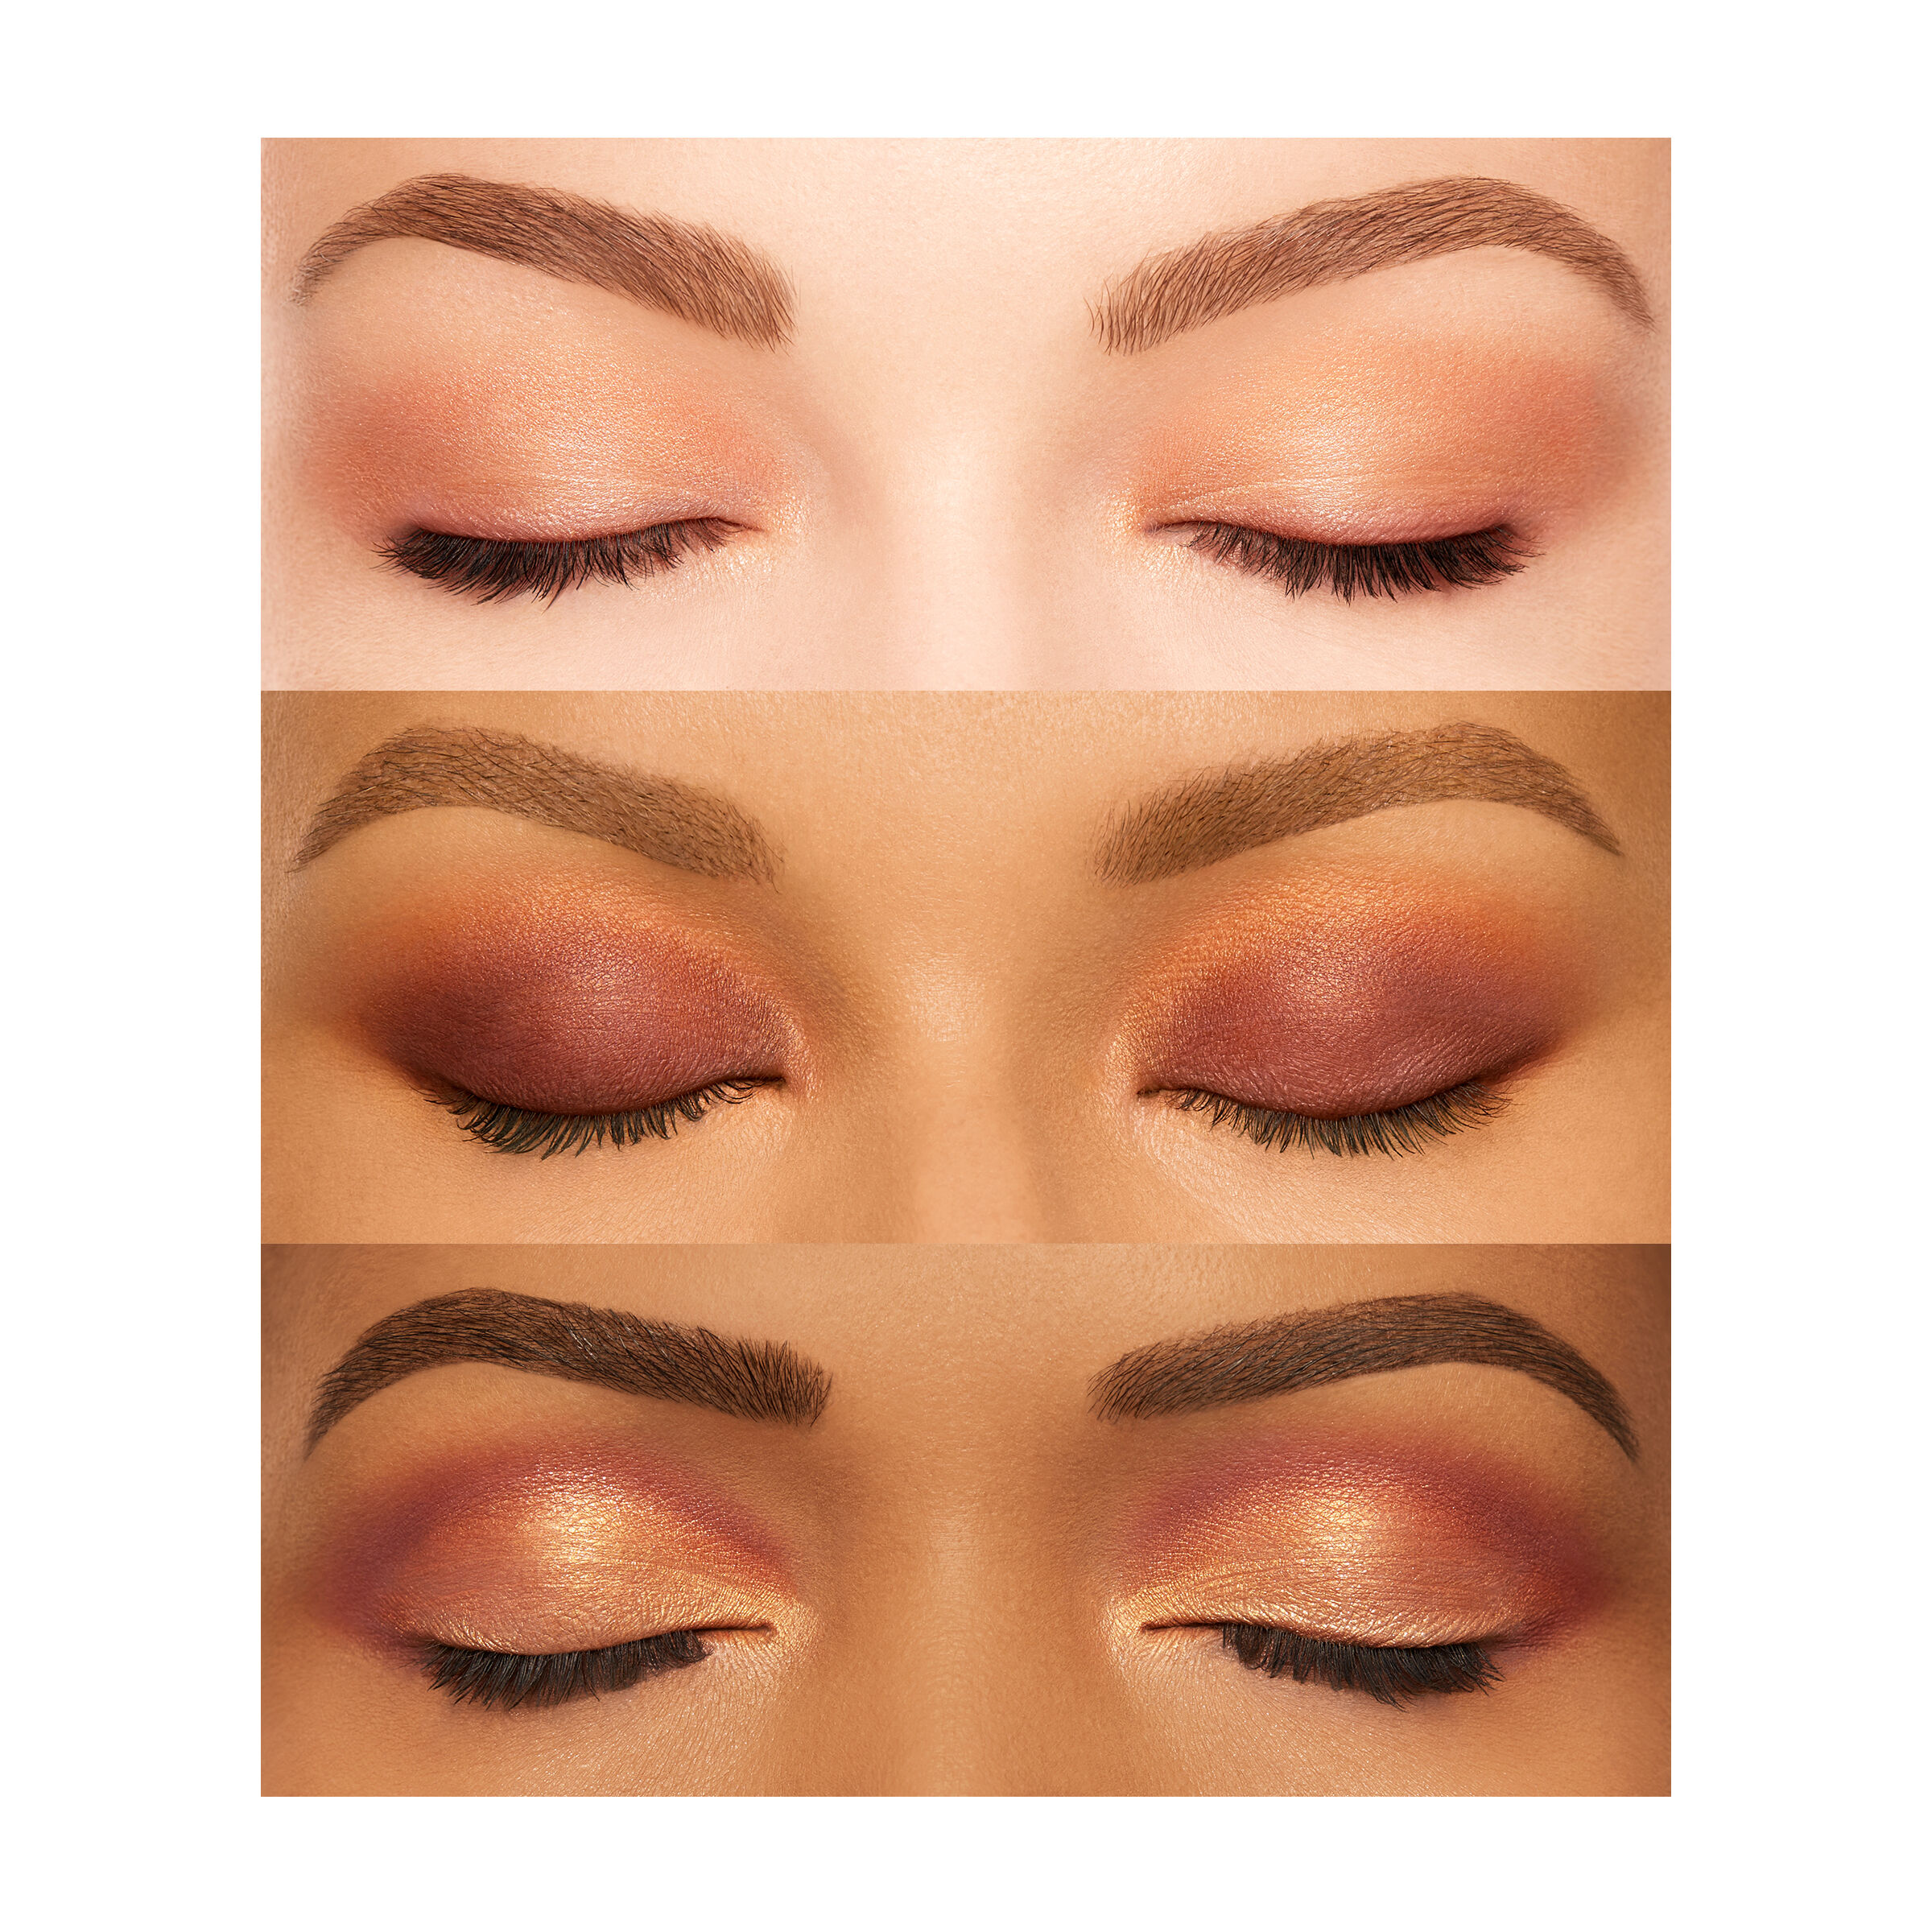 Quad Eyeshadow Palette | NARS Cosmetics